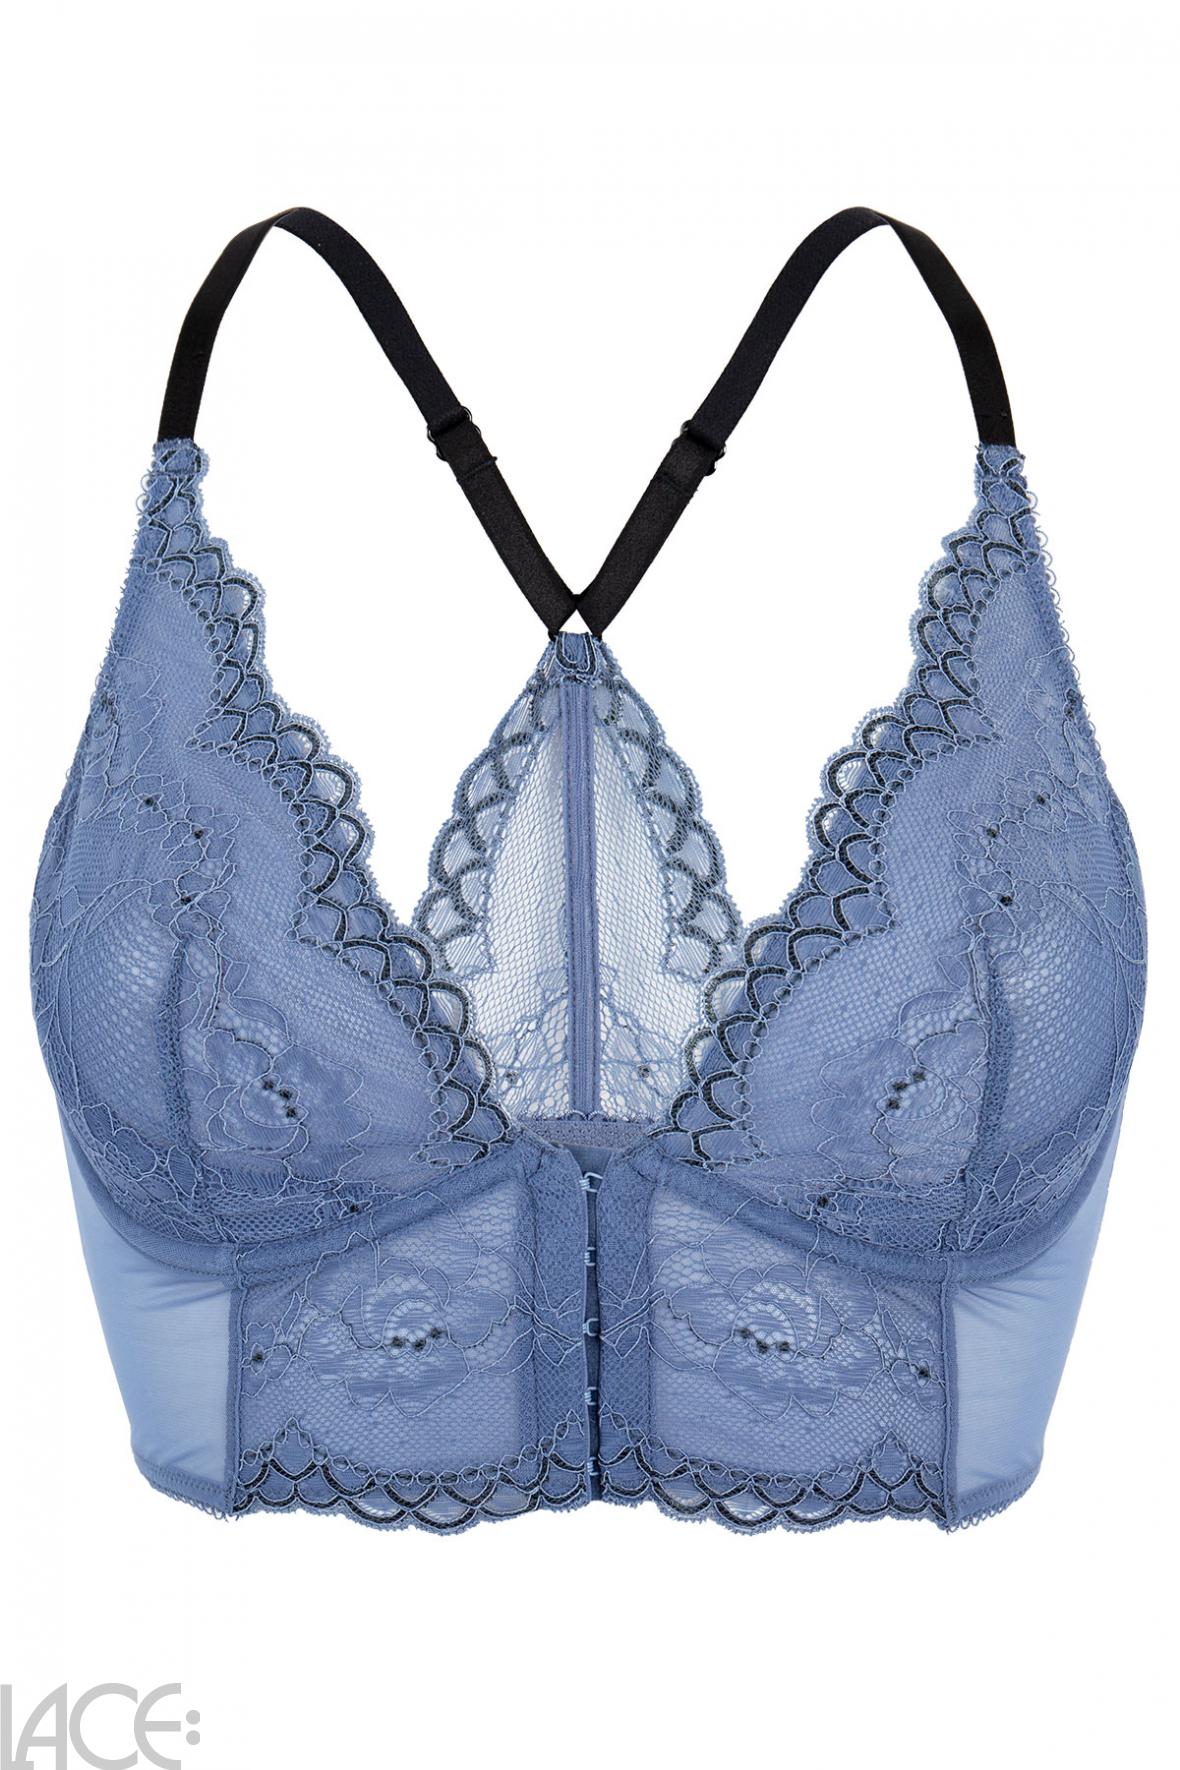 Gossard Superboost Bralette F-J cup MOONLIGHT BLUE – Lace-Lingerie.com